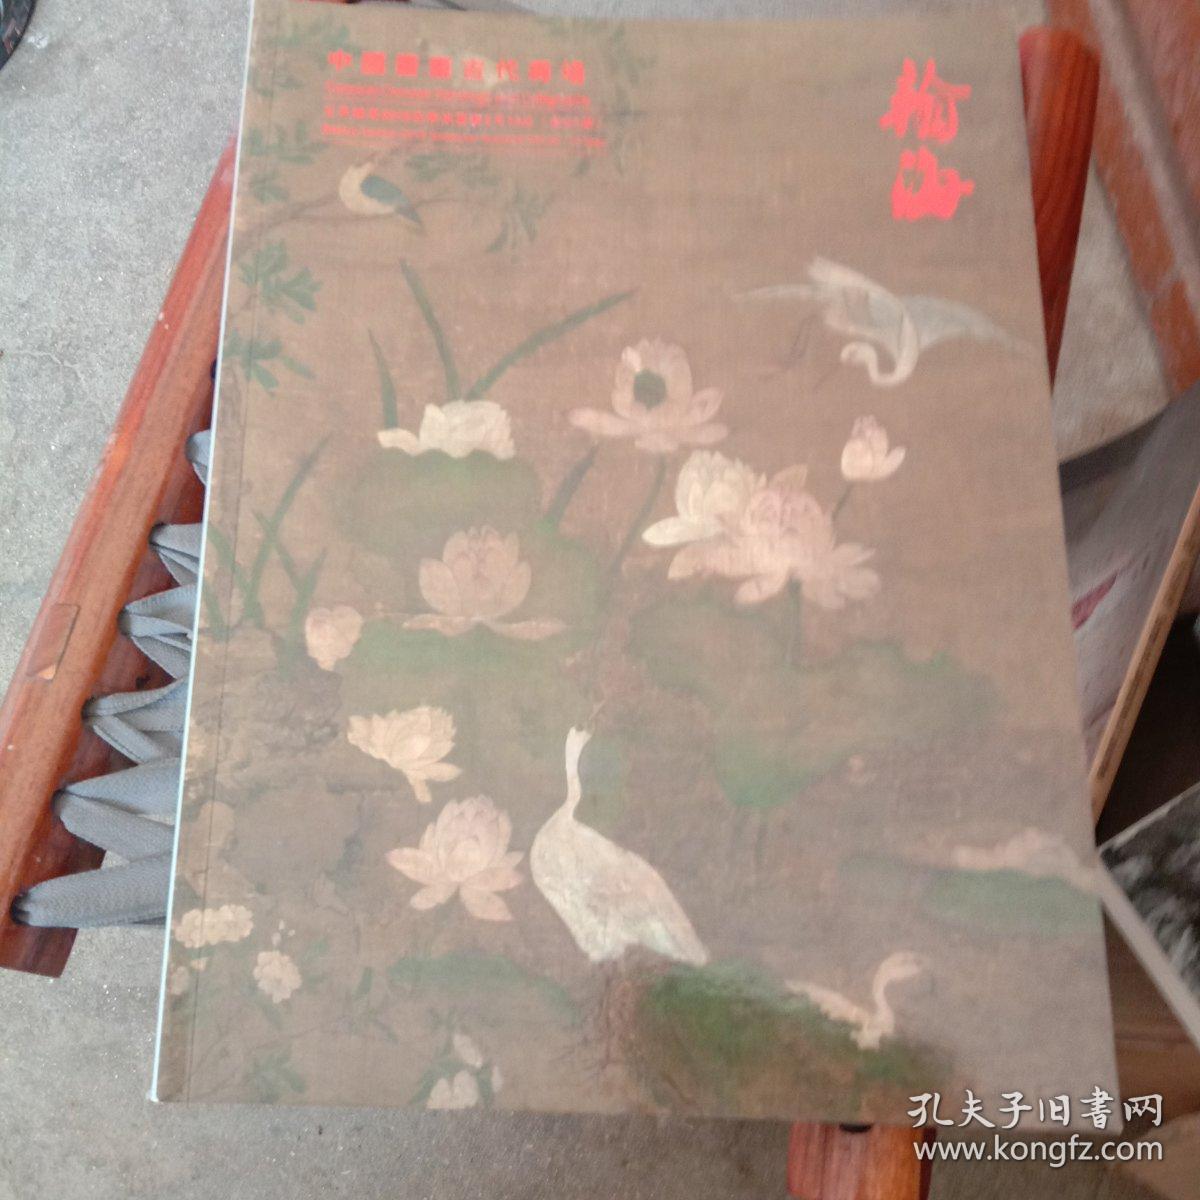 北京翰海2018四季拍卖会 中国书画古代专场 第97期